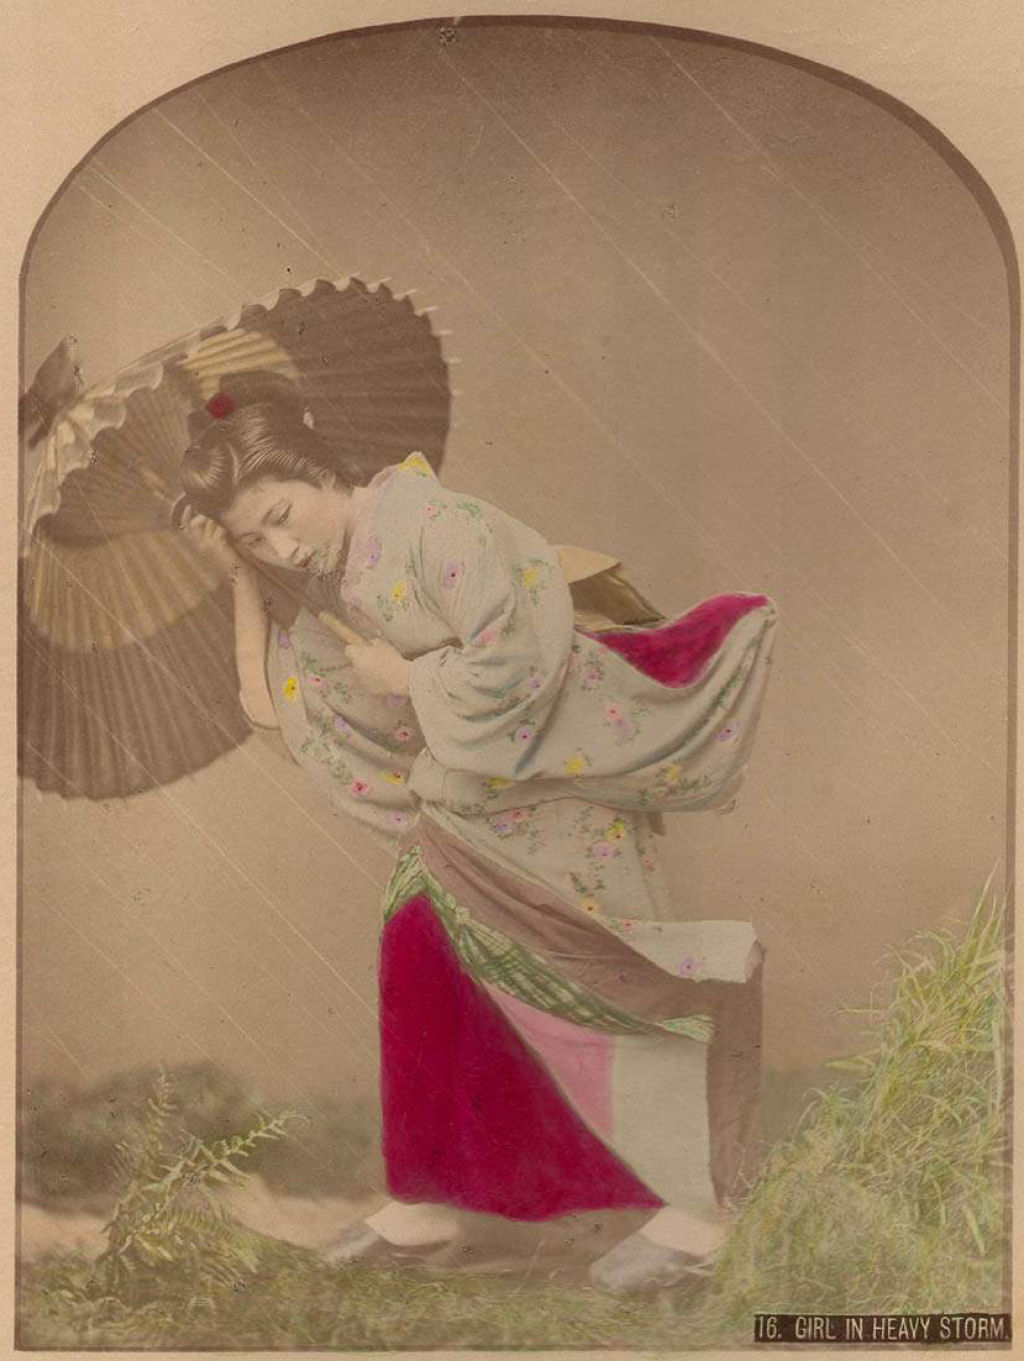 Como as fotos colorizadas vivamente ajudaram a apresentar o Japão ao mundo no século 19